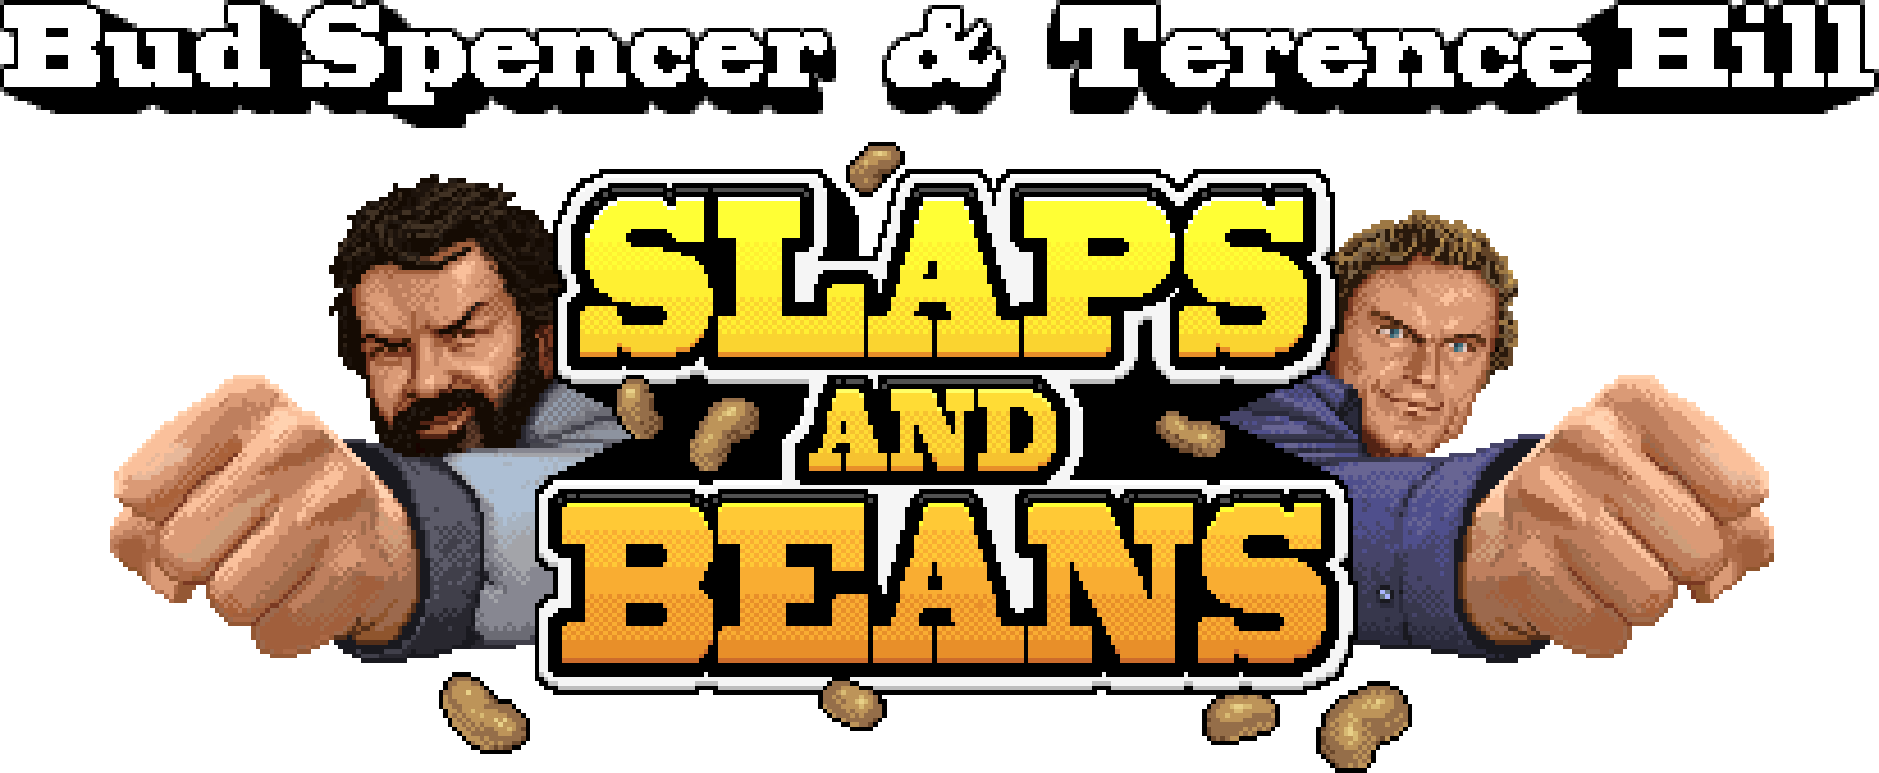 logo_slaps_and_beans_full.png